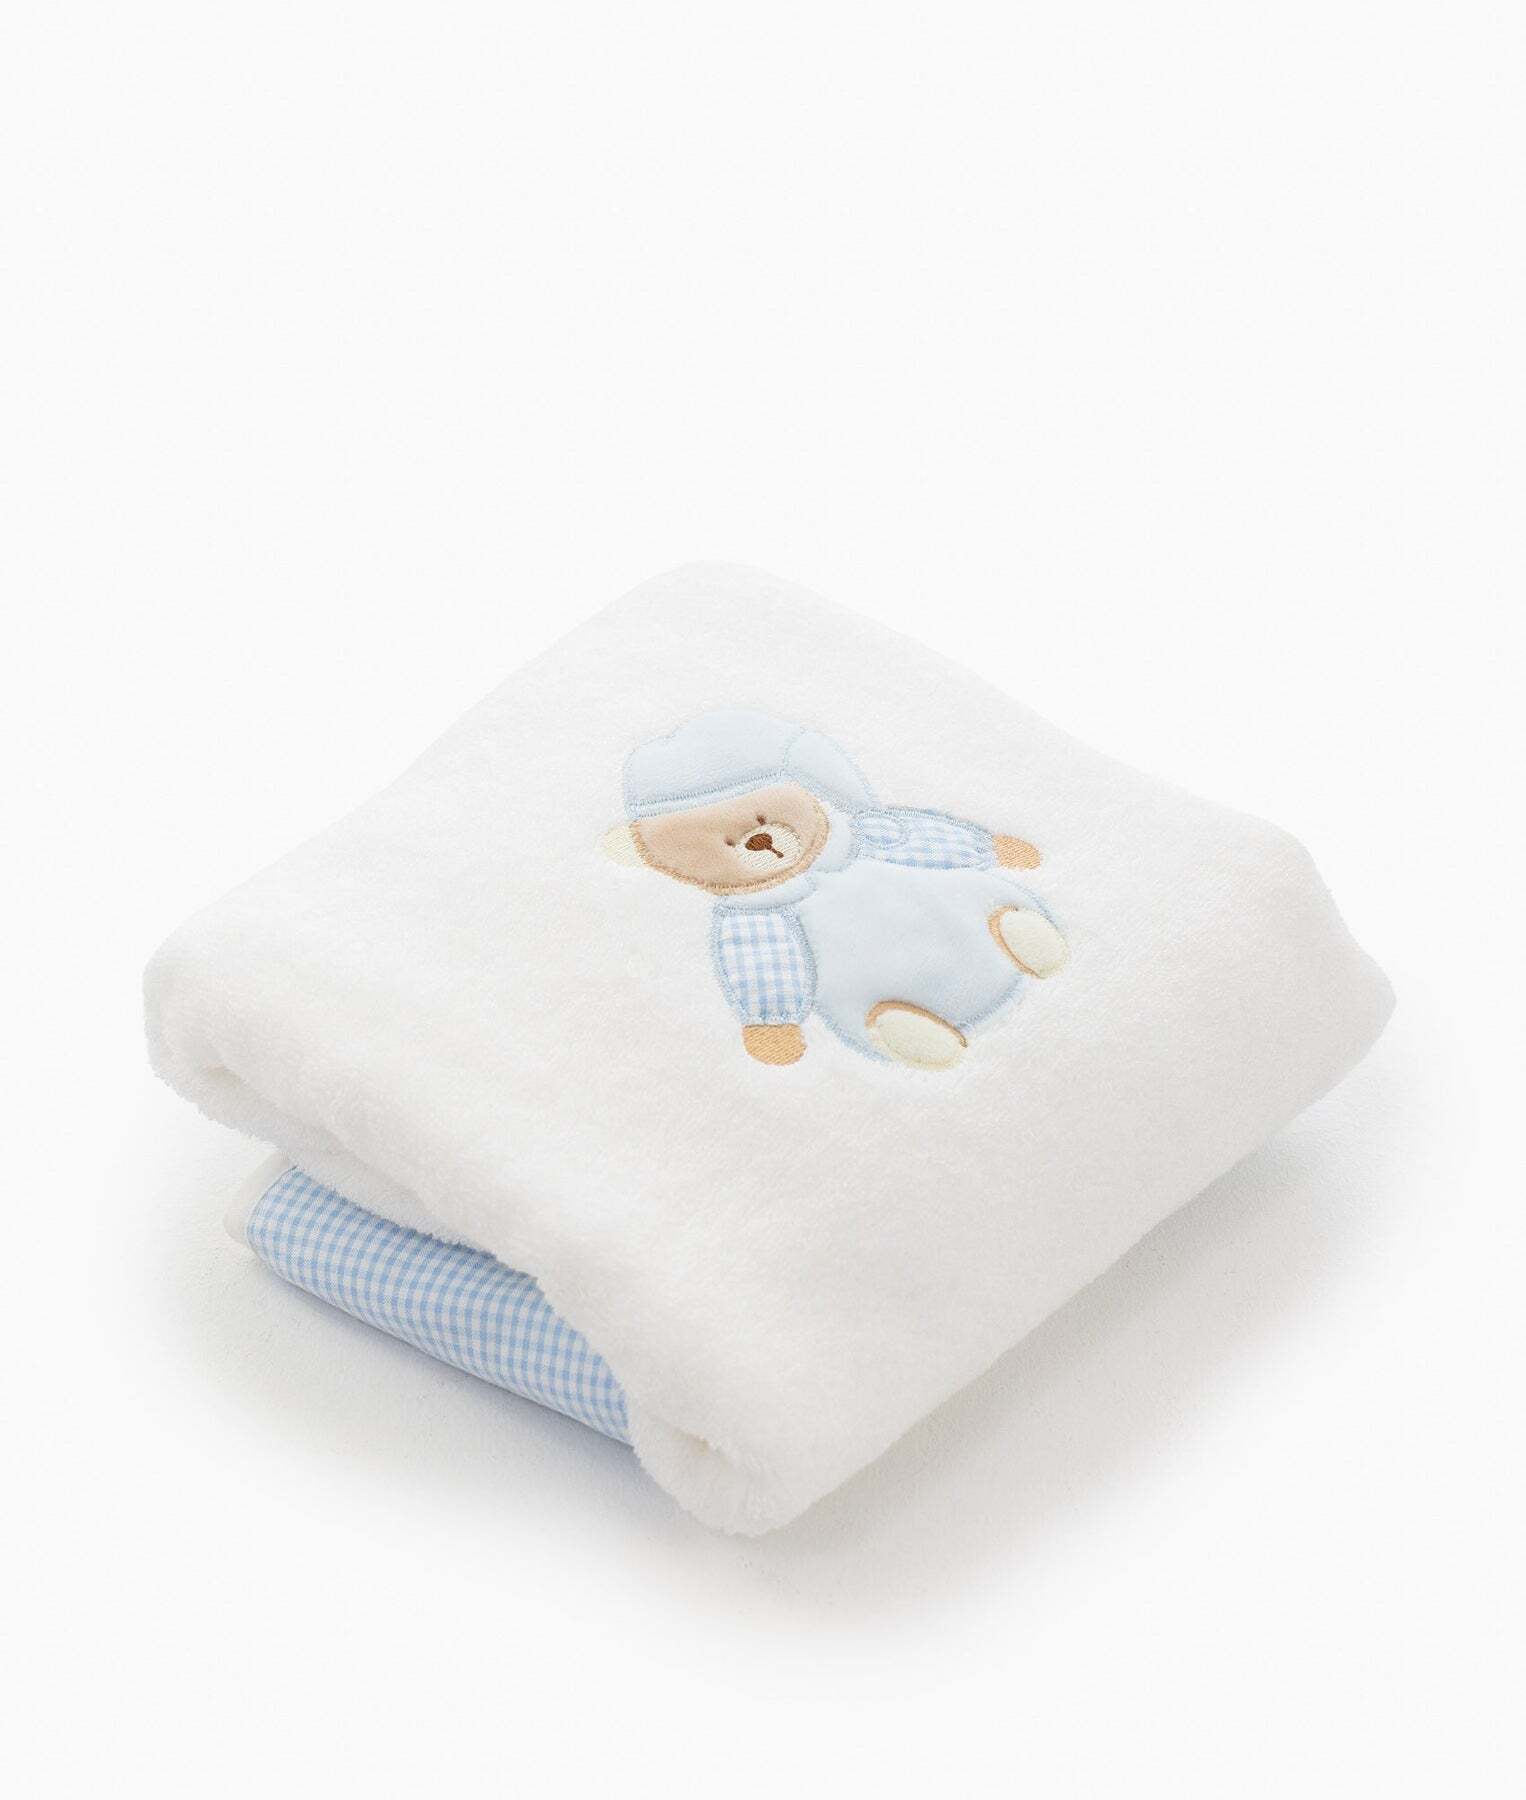 bear-towel-rattle-set-blue-519_1800x1800